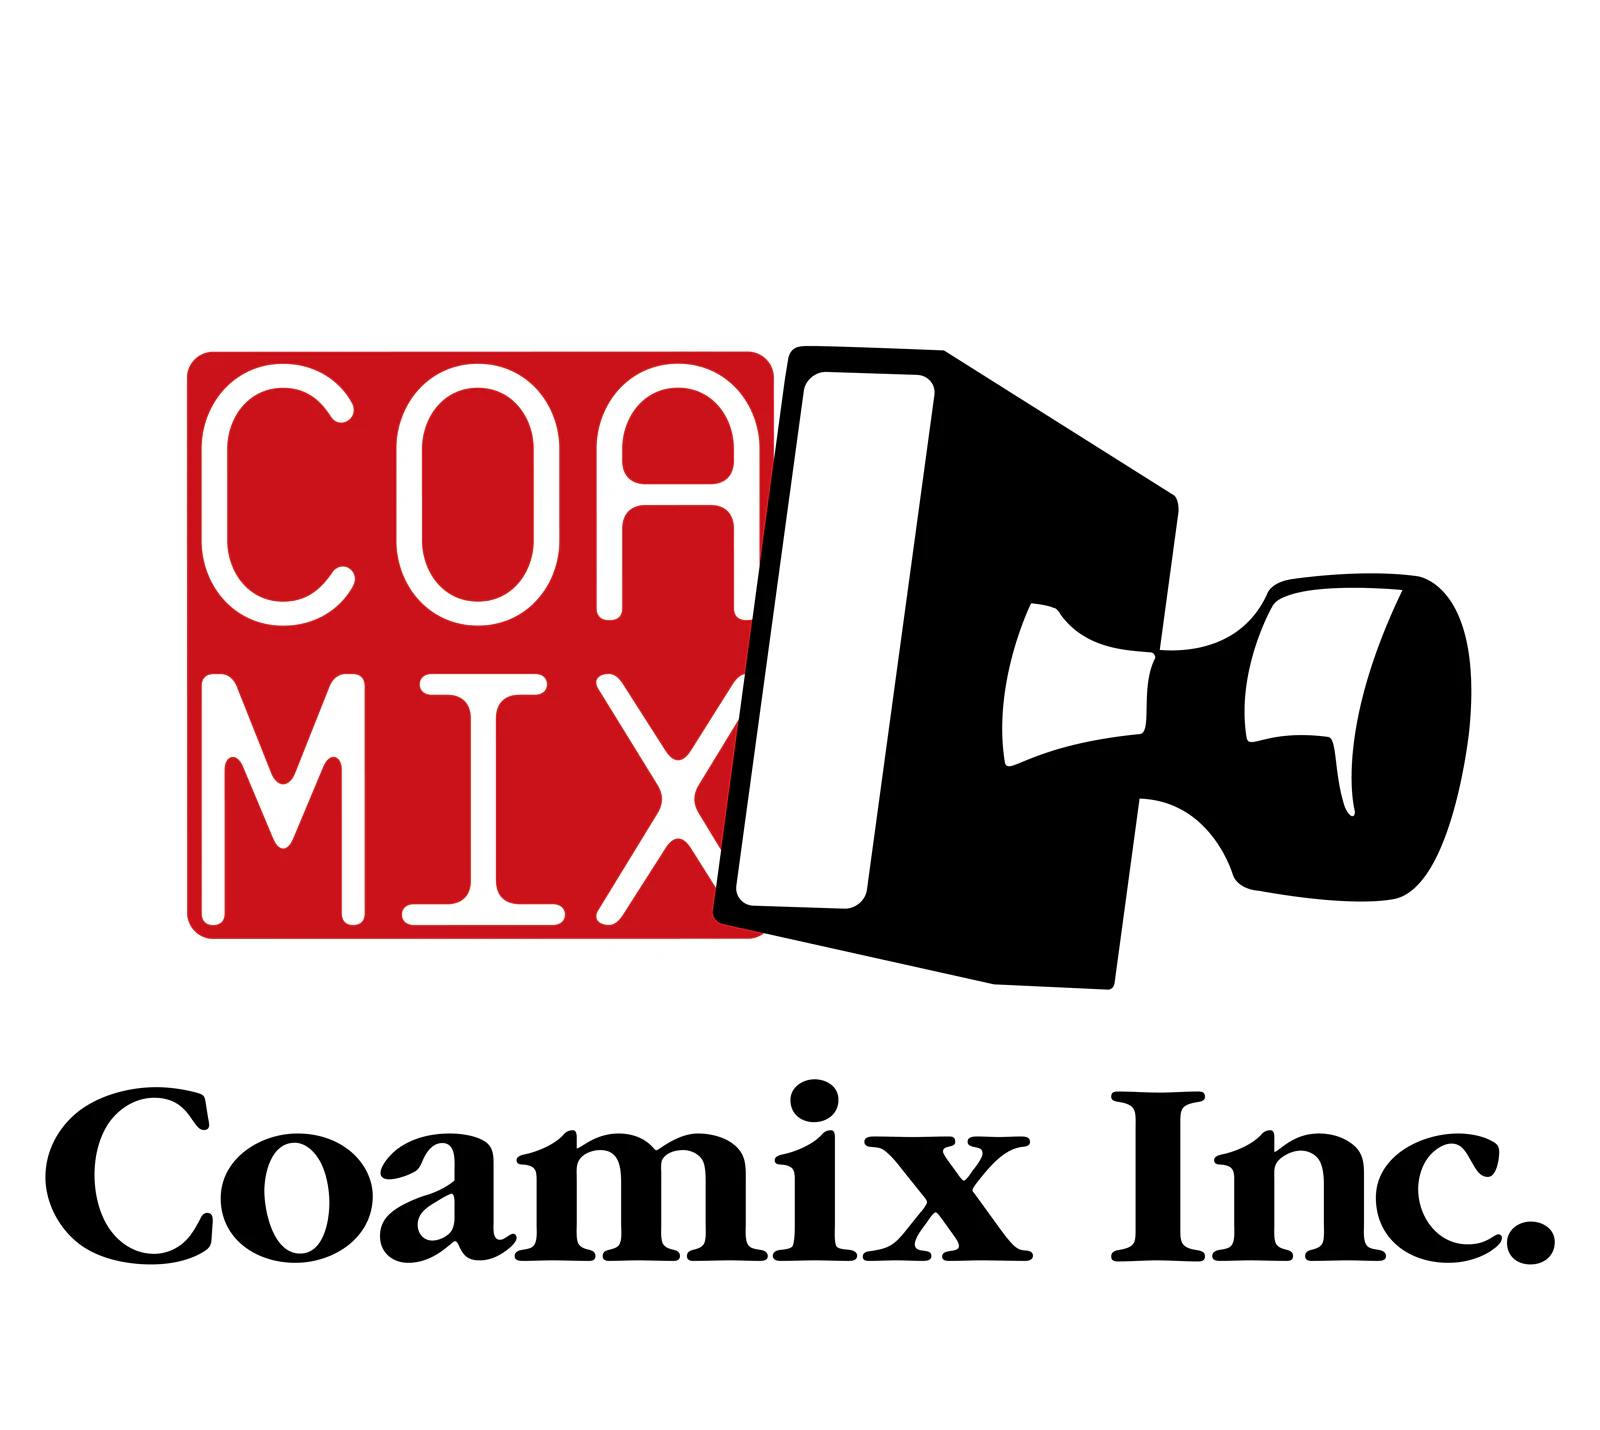 ¡El sitio web oficial de Coremix ha sido renovado! ¡El “Catálogo Manga” que te permite obtener una vista previa y comprar inmediatamente es súper conveniente!